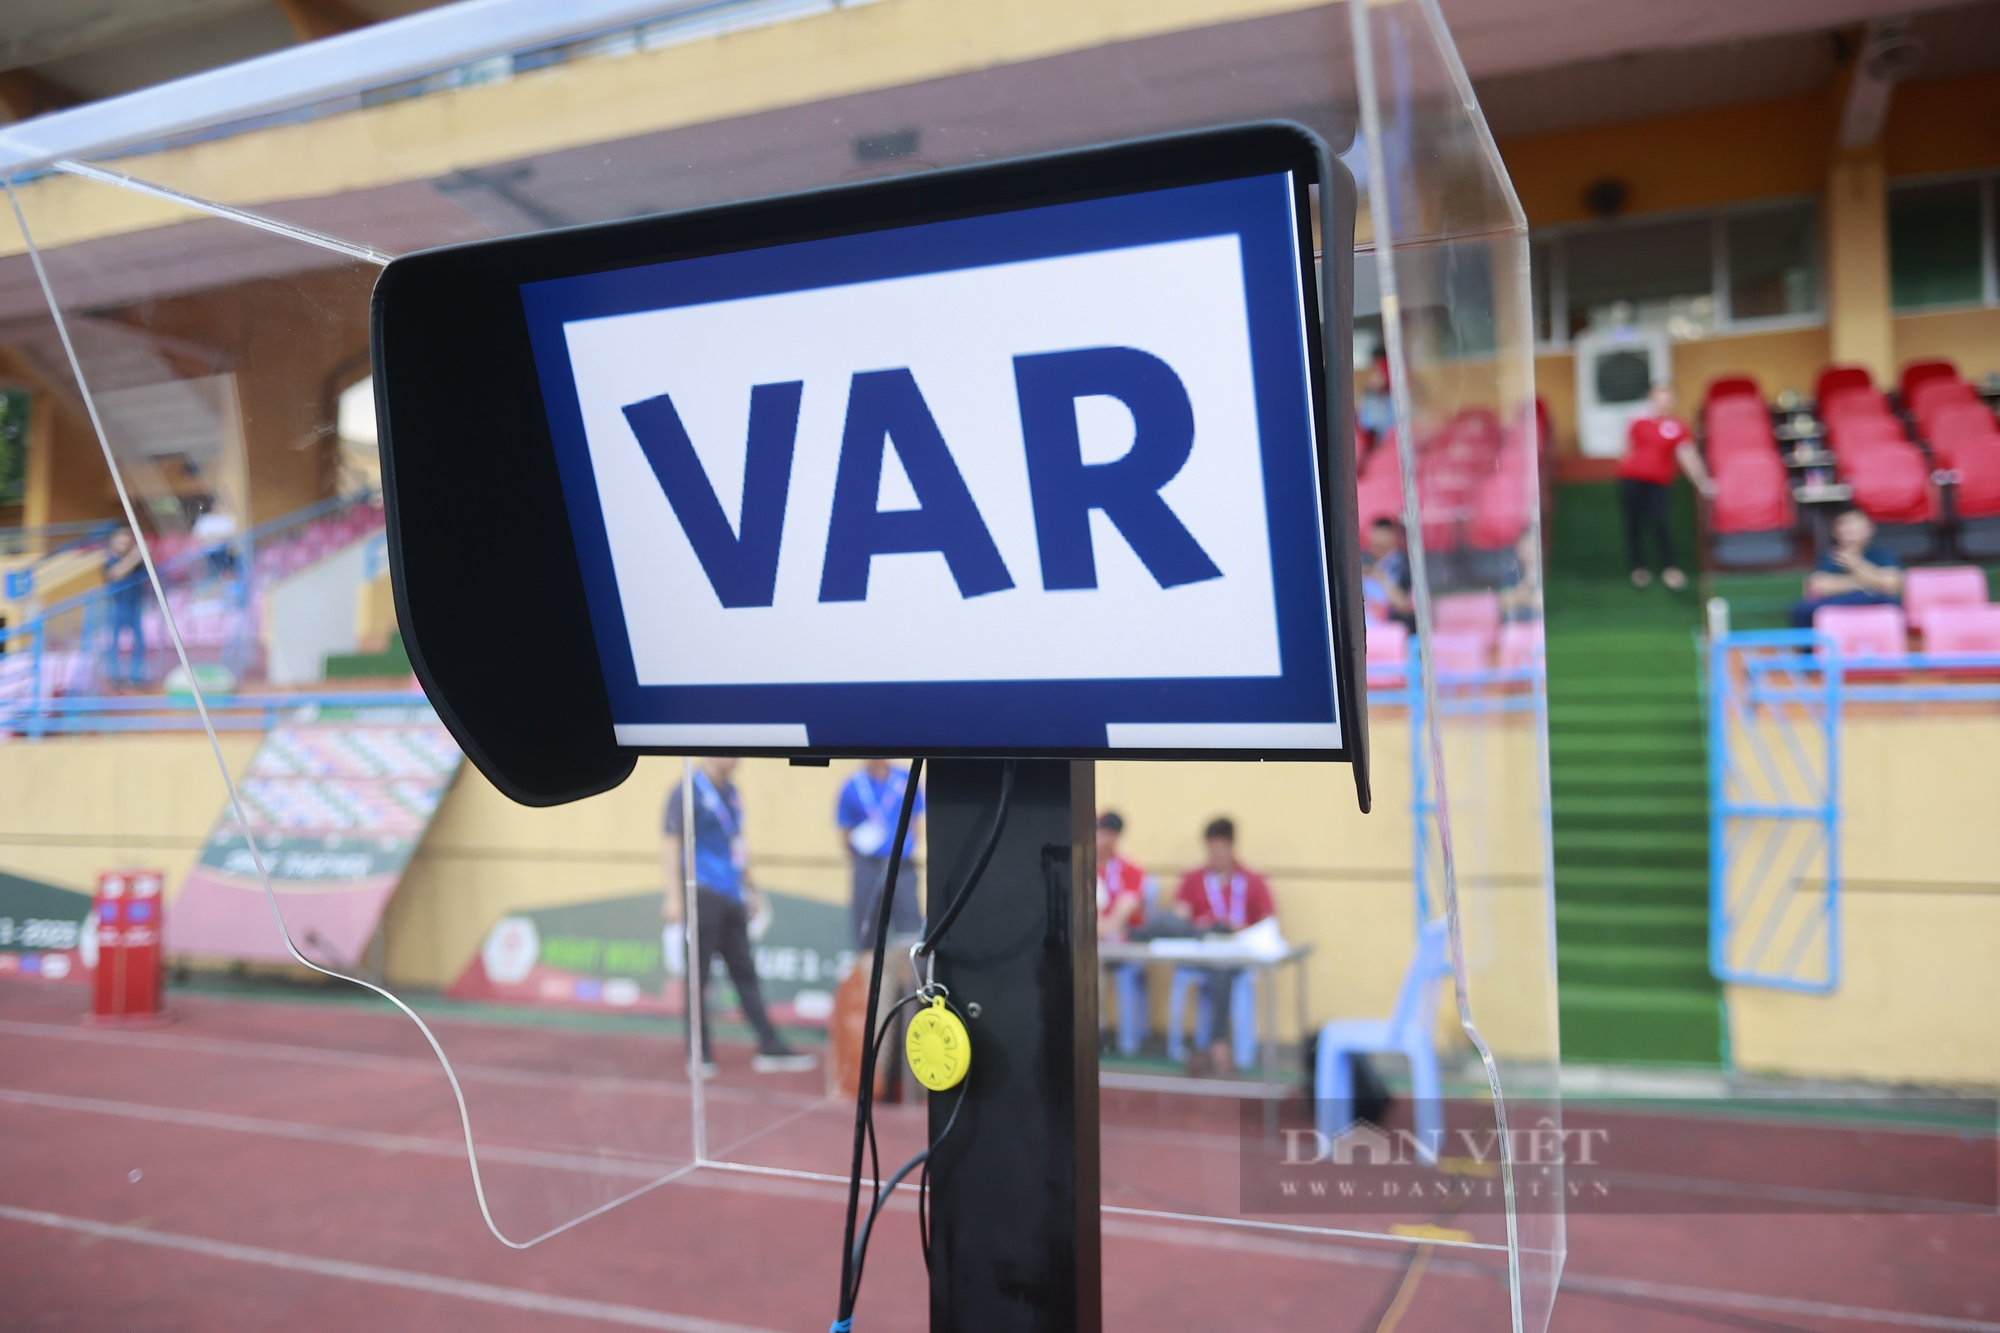 Cận cảnh công nghệ VAR xuất hiện tại V-League - Ảnh 2.